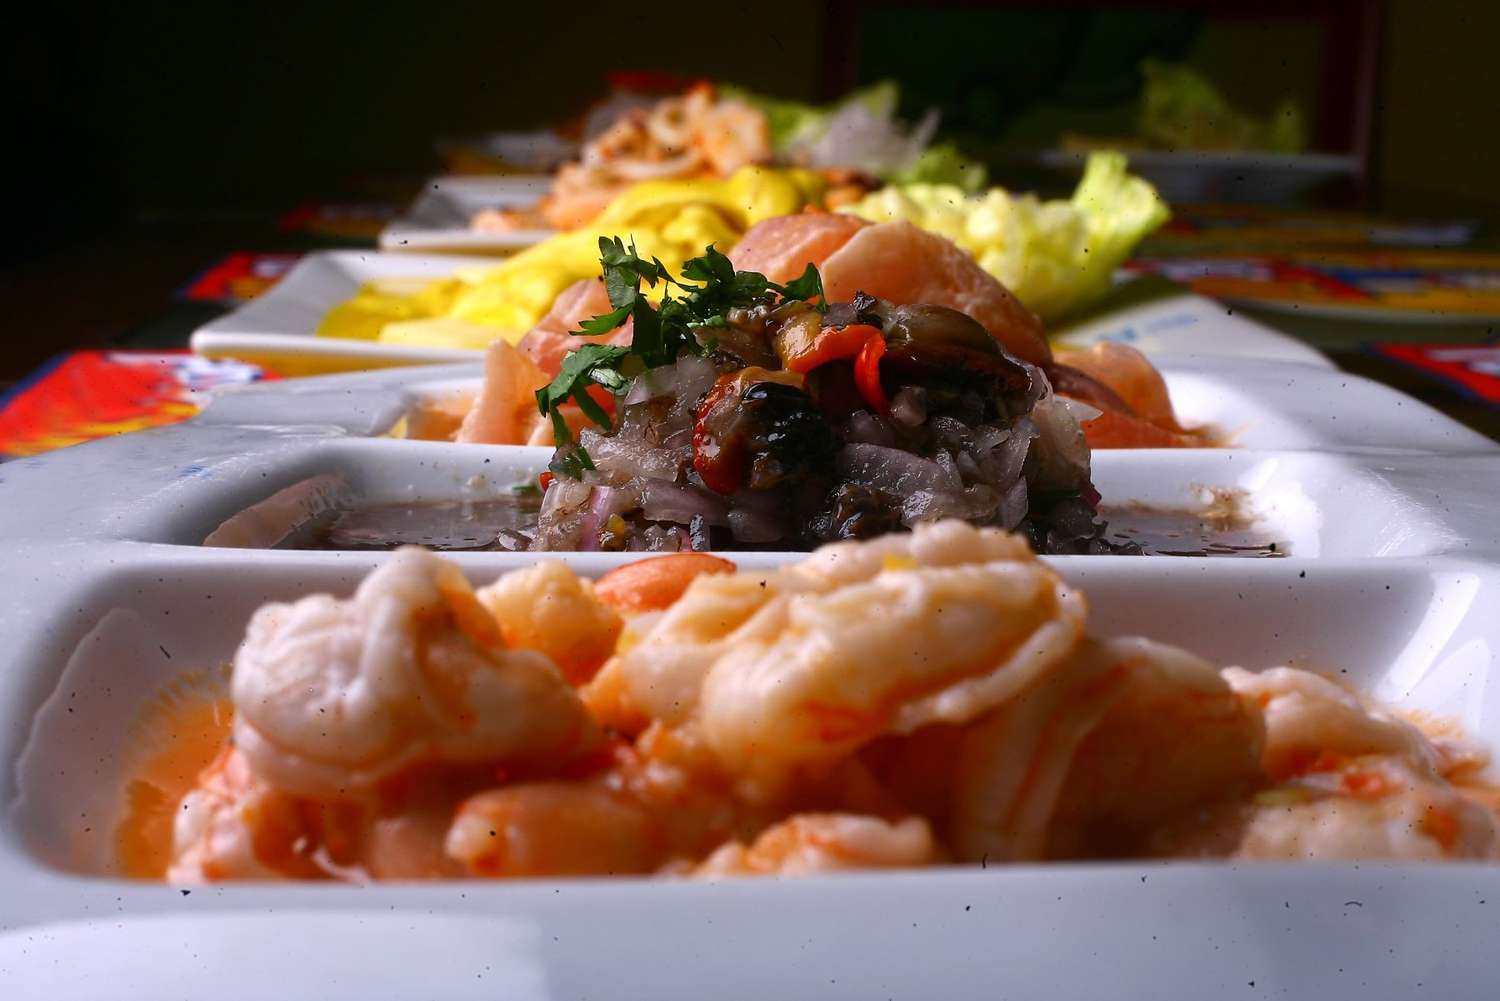 Perú fue elegido el mejor destino gastronómico y cultural del mundo